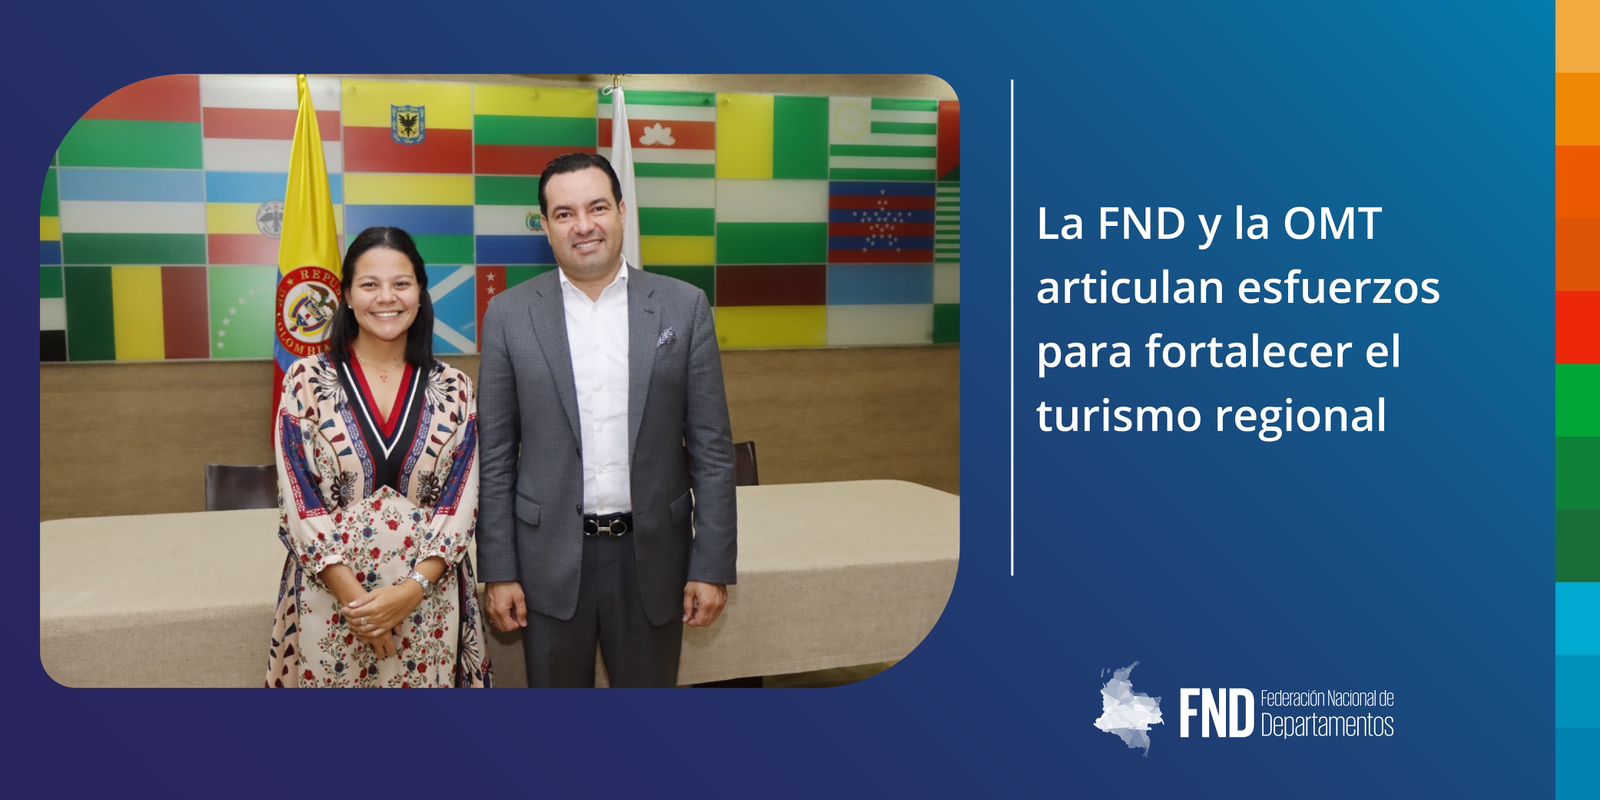 image La FND y la OMT articulan esfuerzos para fortalecer el turismo regional